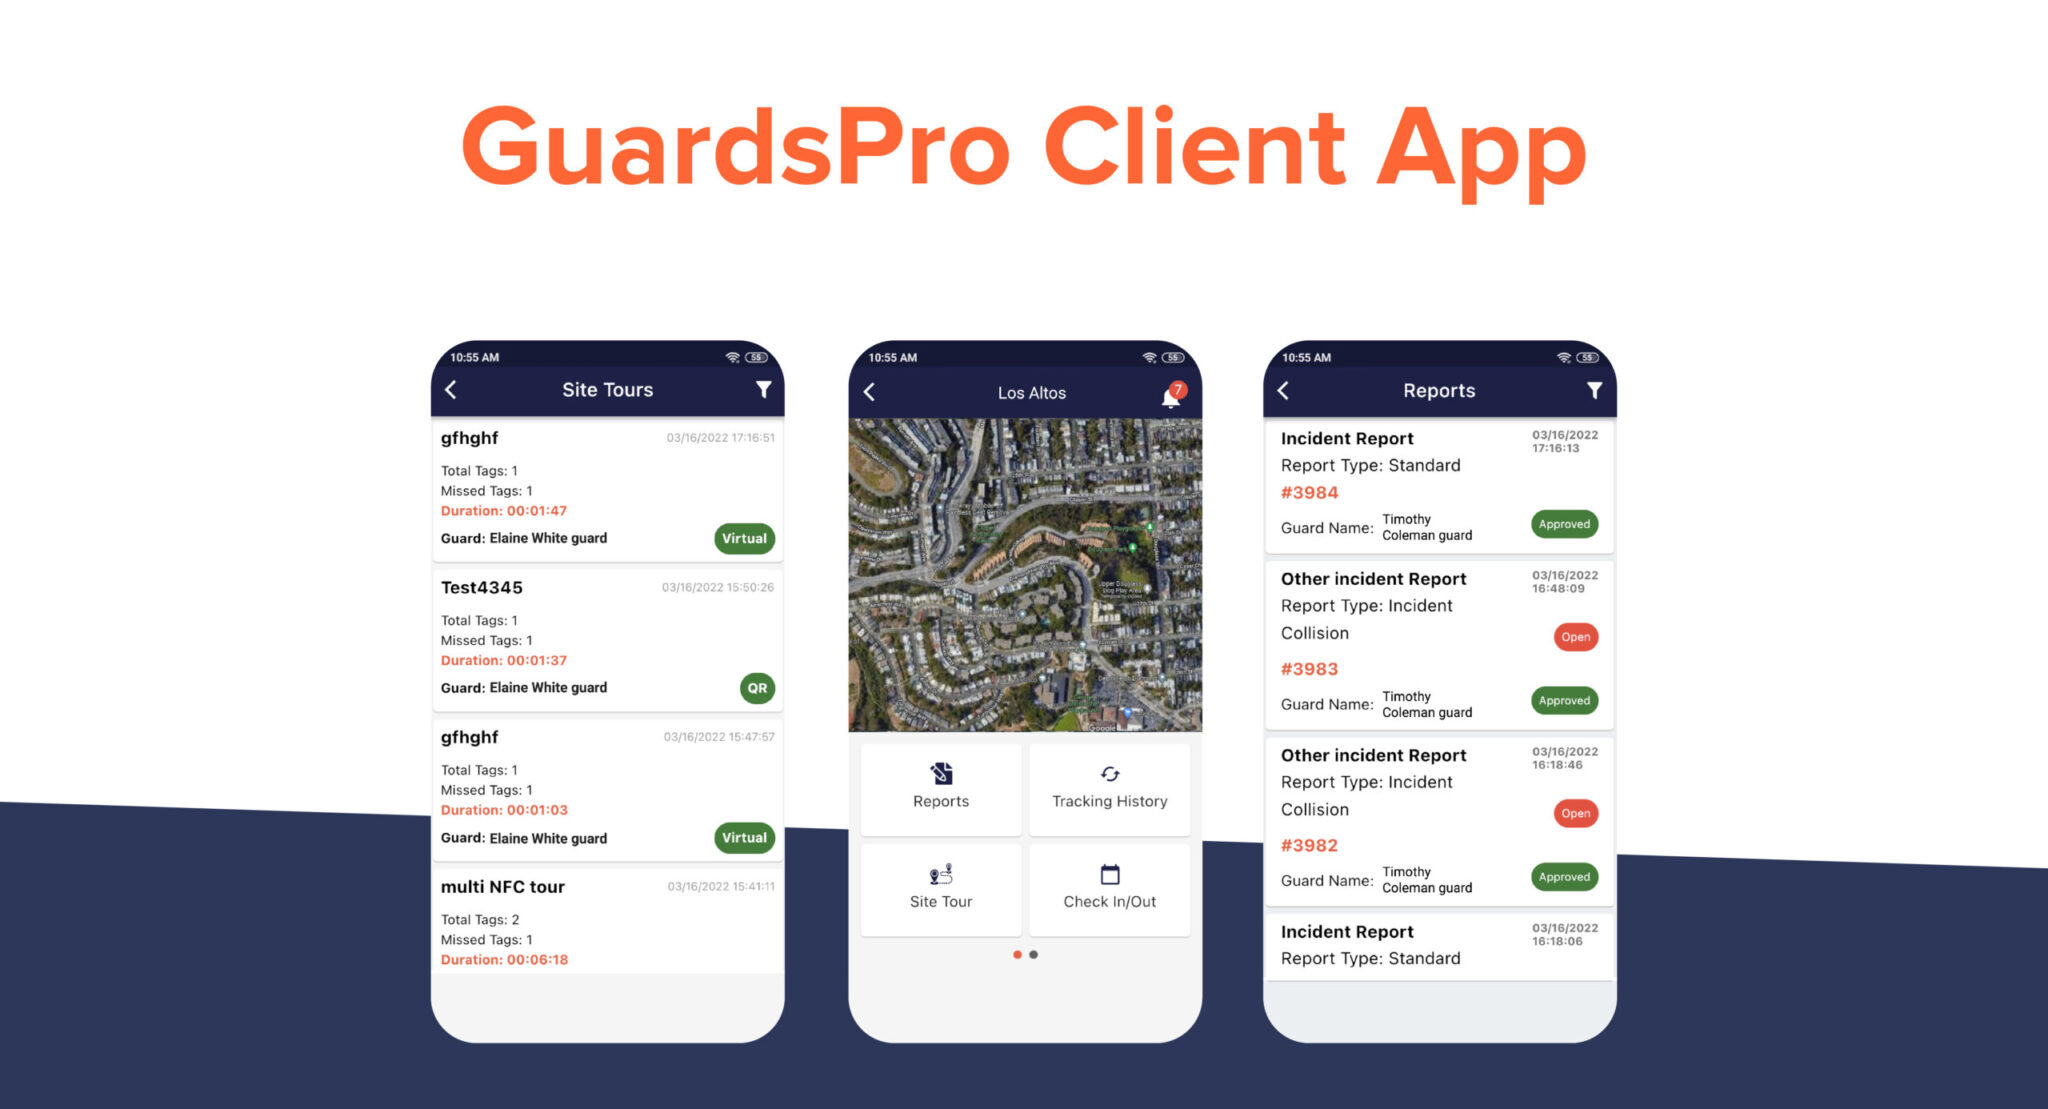 GuardsPro Client App